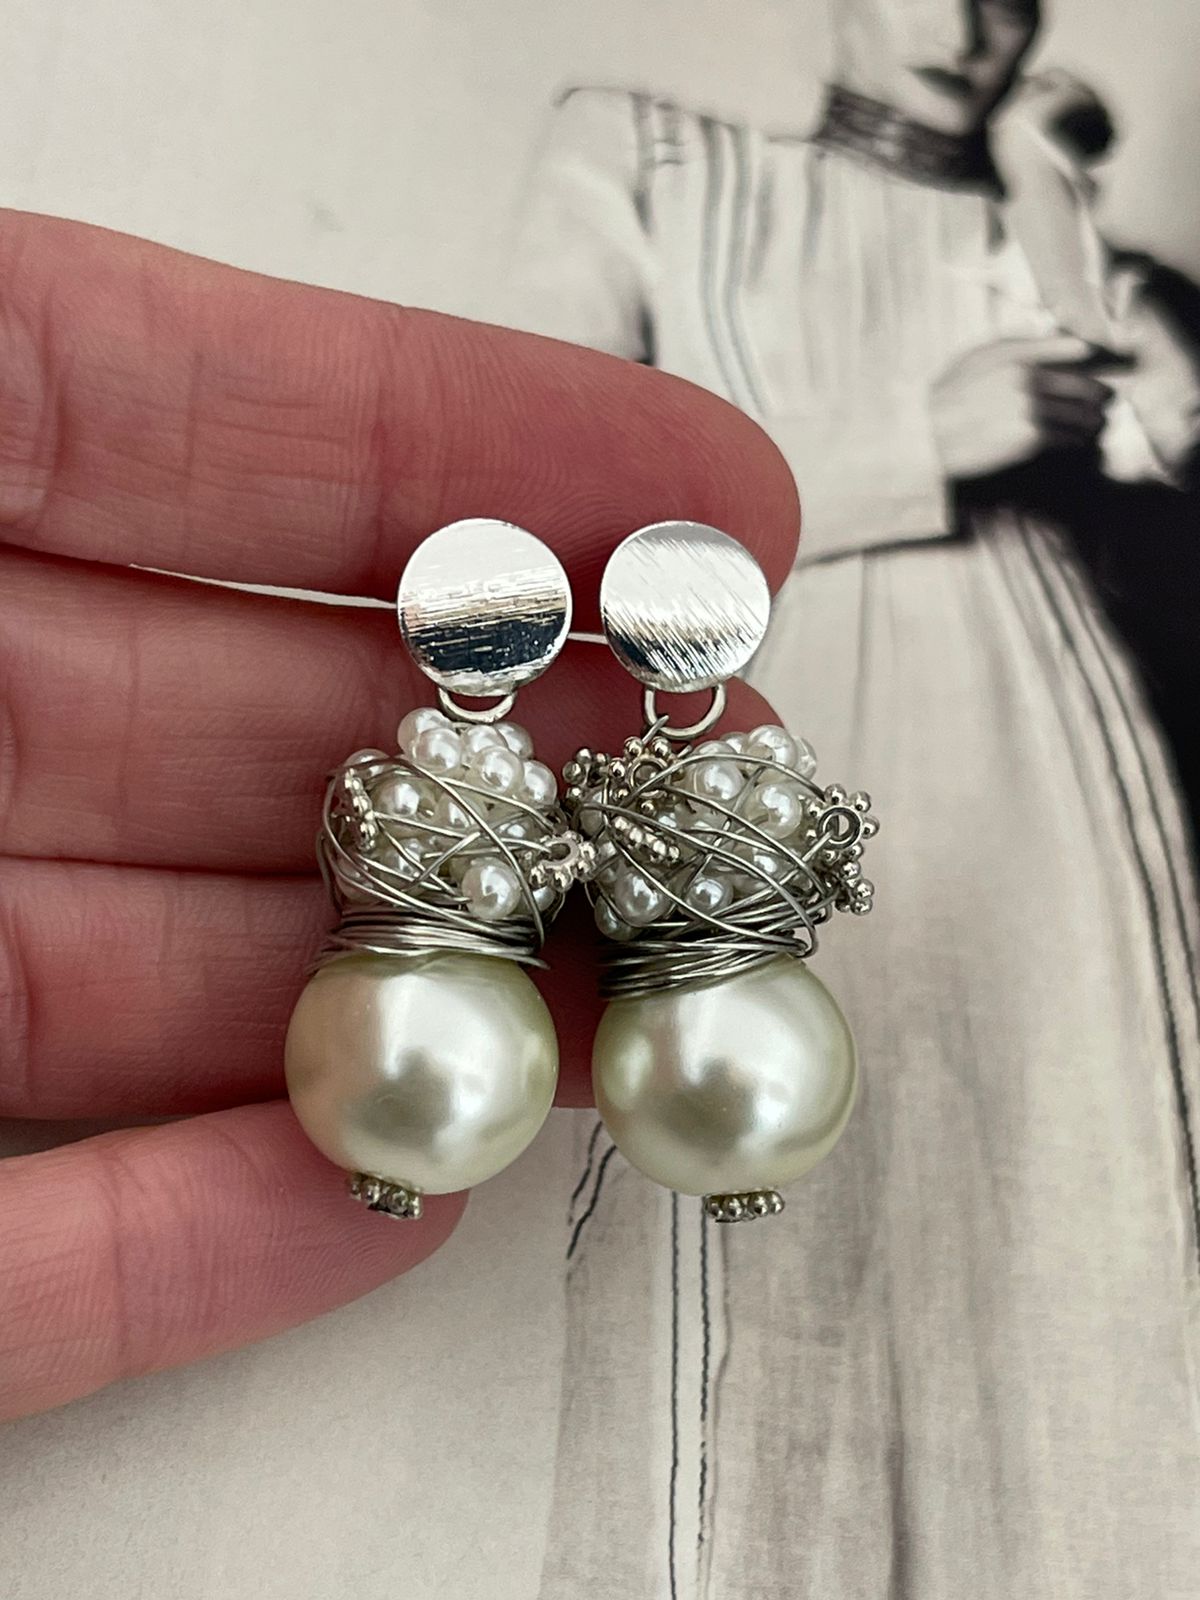 Aros Hippie Chic de elegantes perlas blancas bijoux y base bañada en plata. Usalos de dia o de noche.